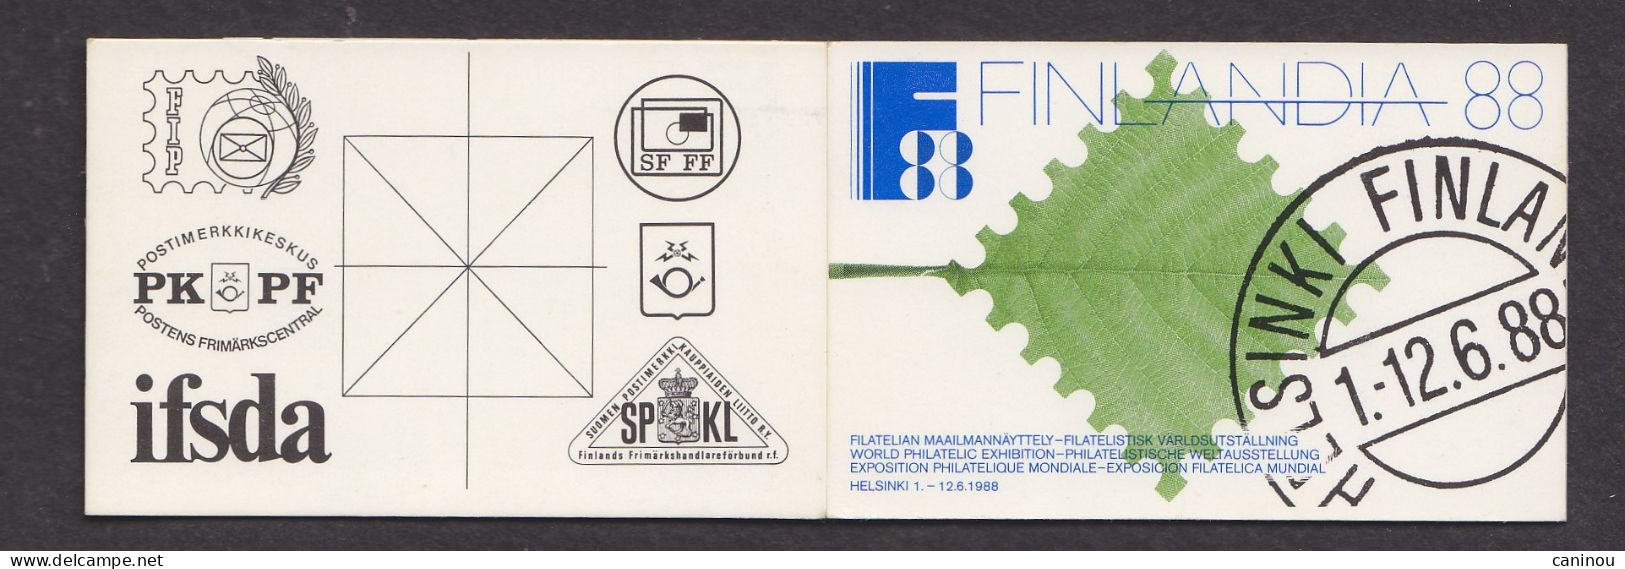 FINLANDE CARNET  Y & T C972a  FINLANDIA 88 1987 NEUF - Libretti